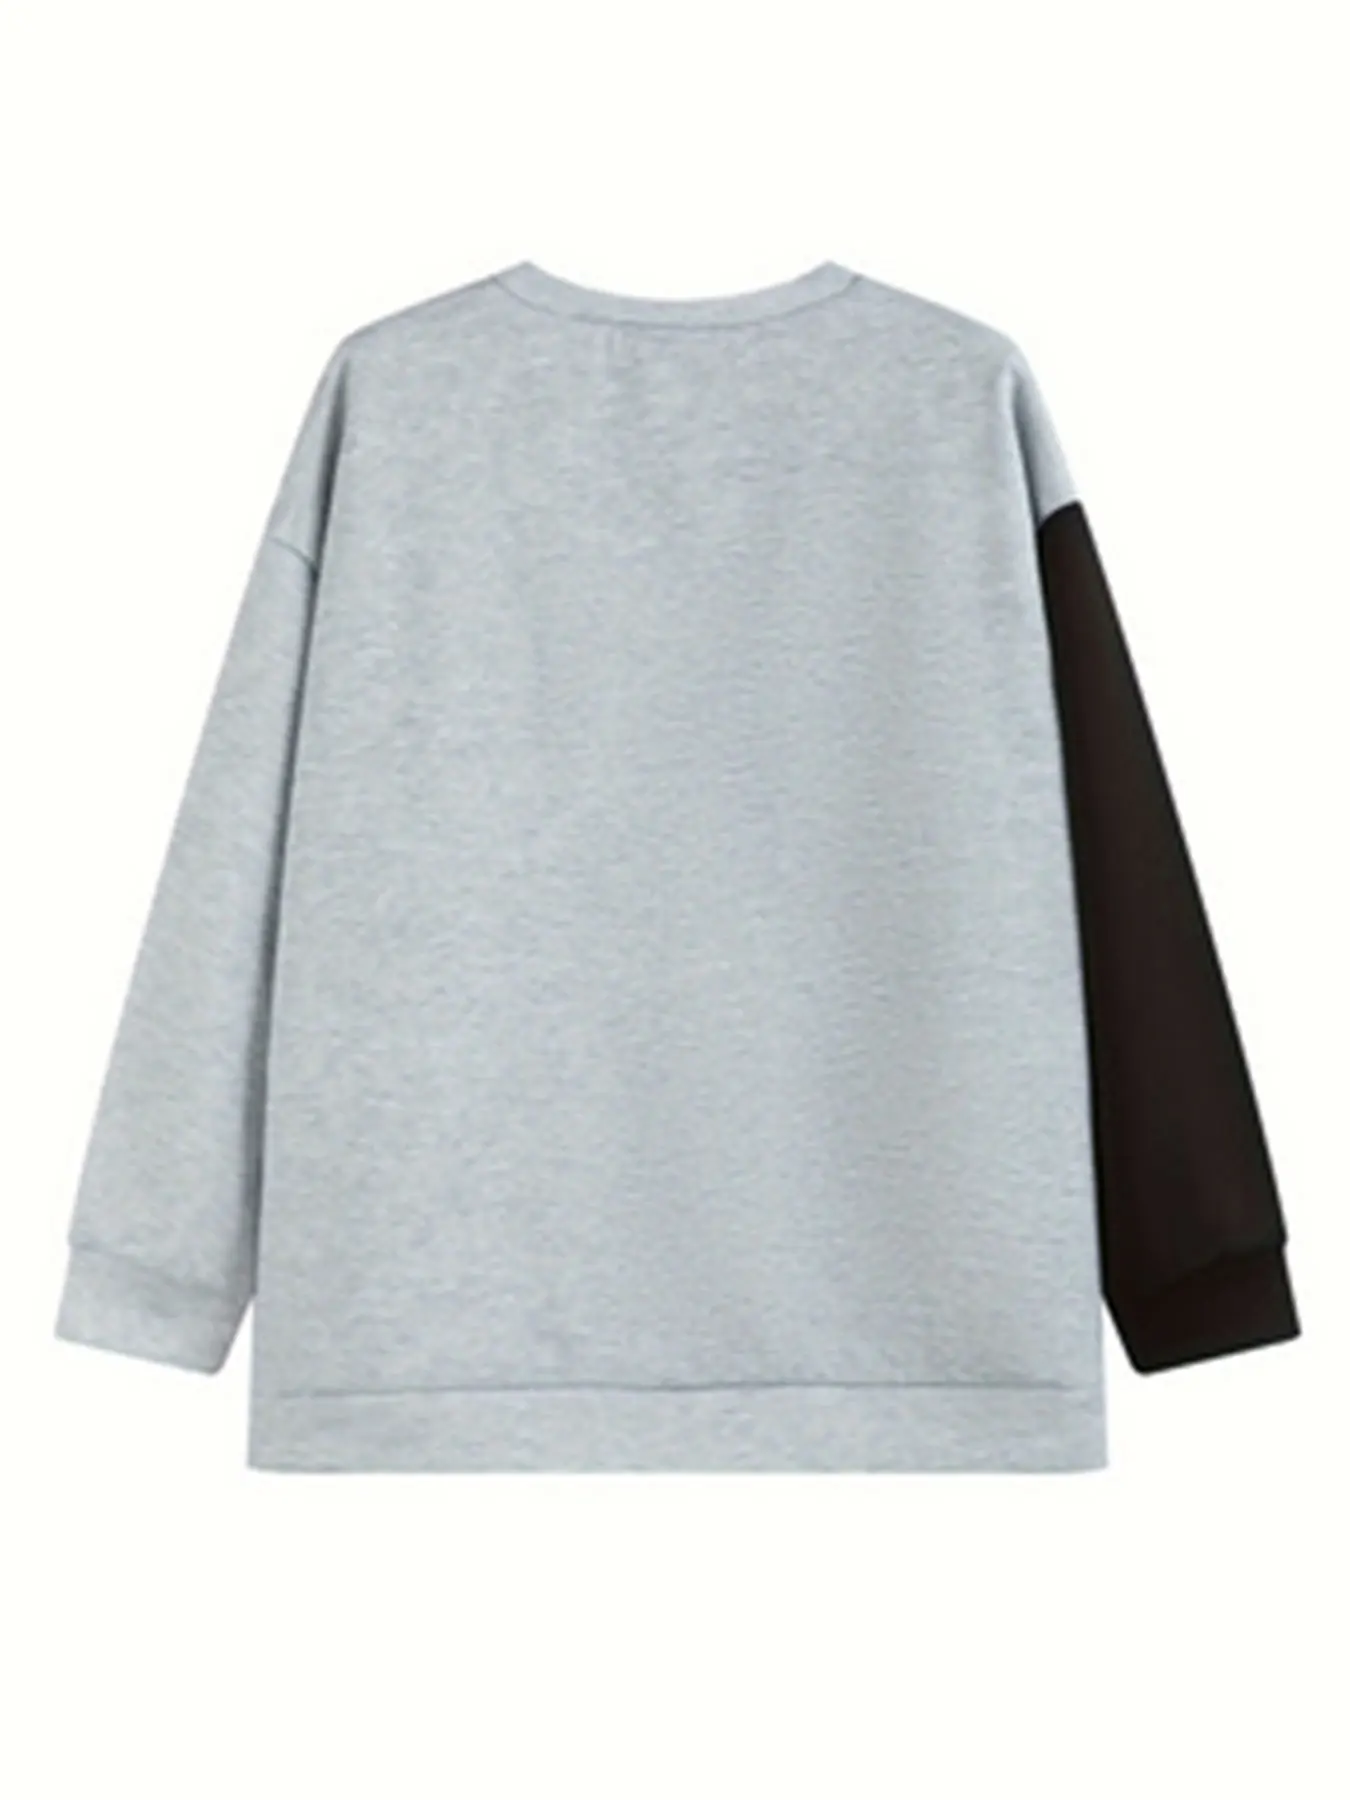 Kaus kasual ukuran Plus, baju Sweatshirt kasual wanita, ukuran Plus huruf & kucing & kupu-kupu, kaus lengan panjang, leher bulat